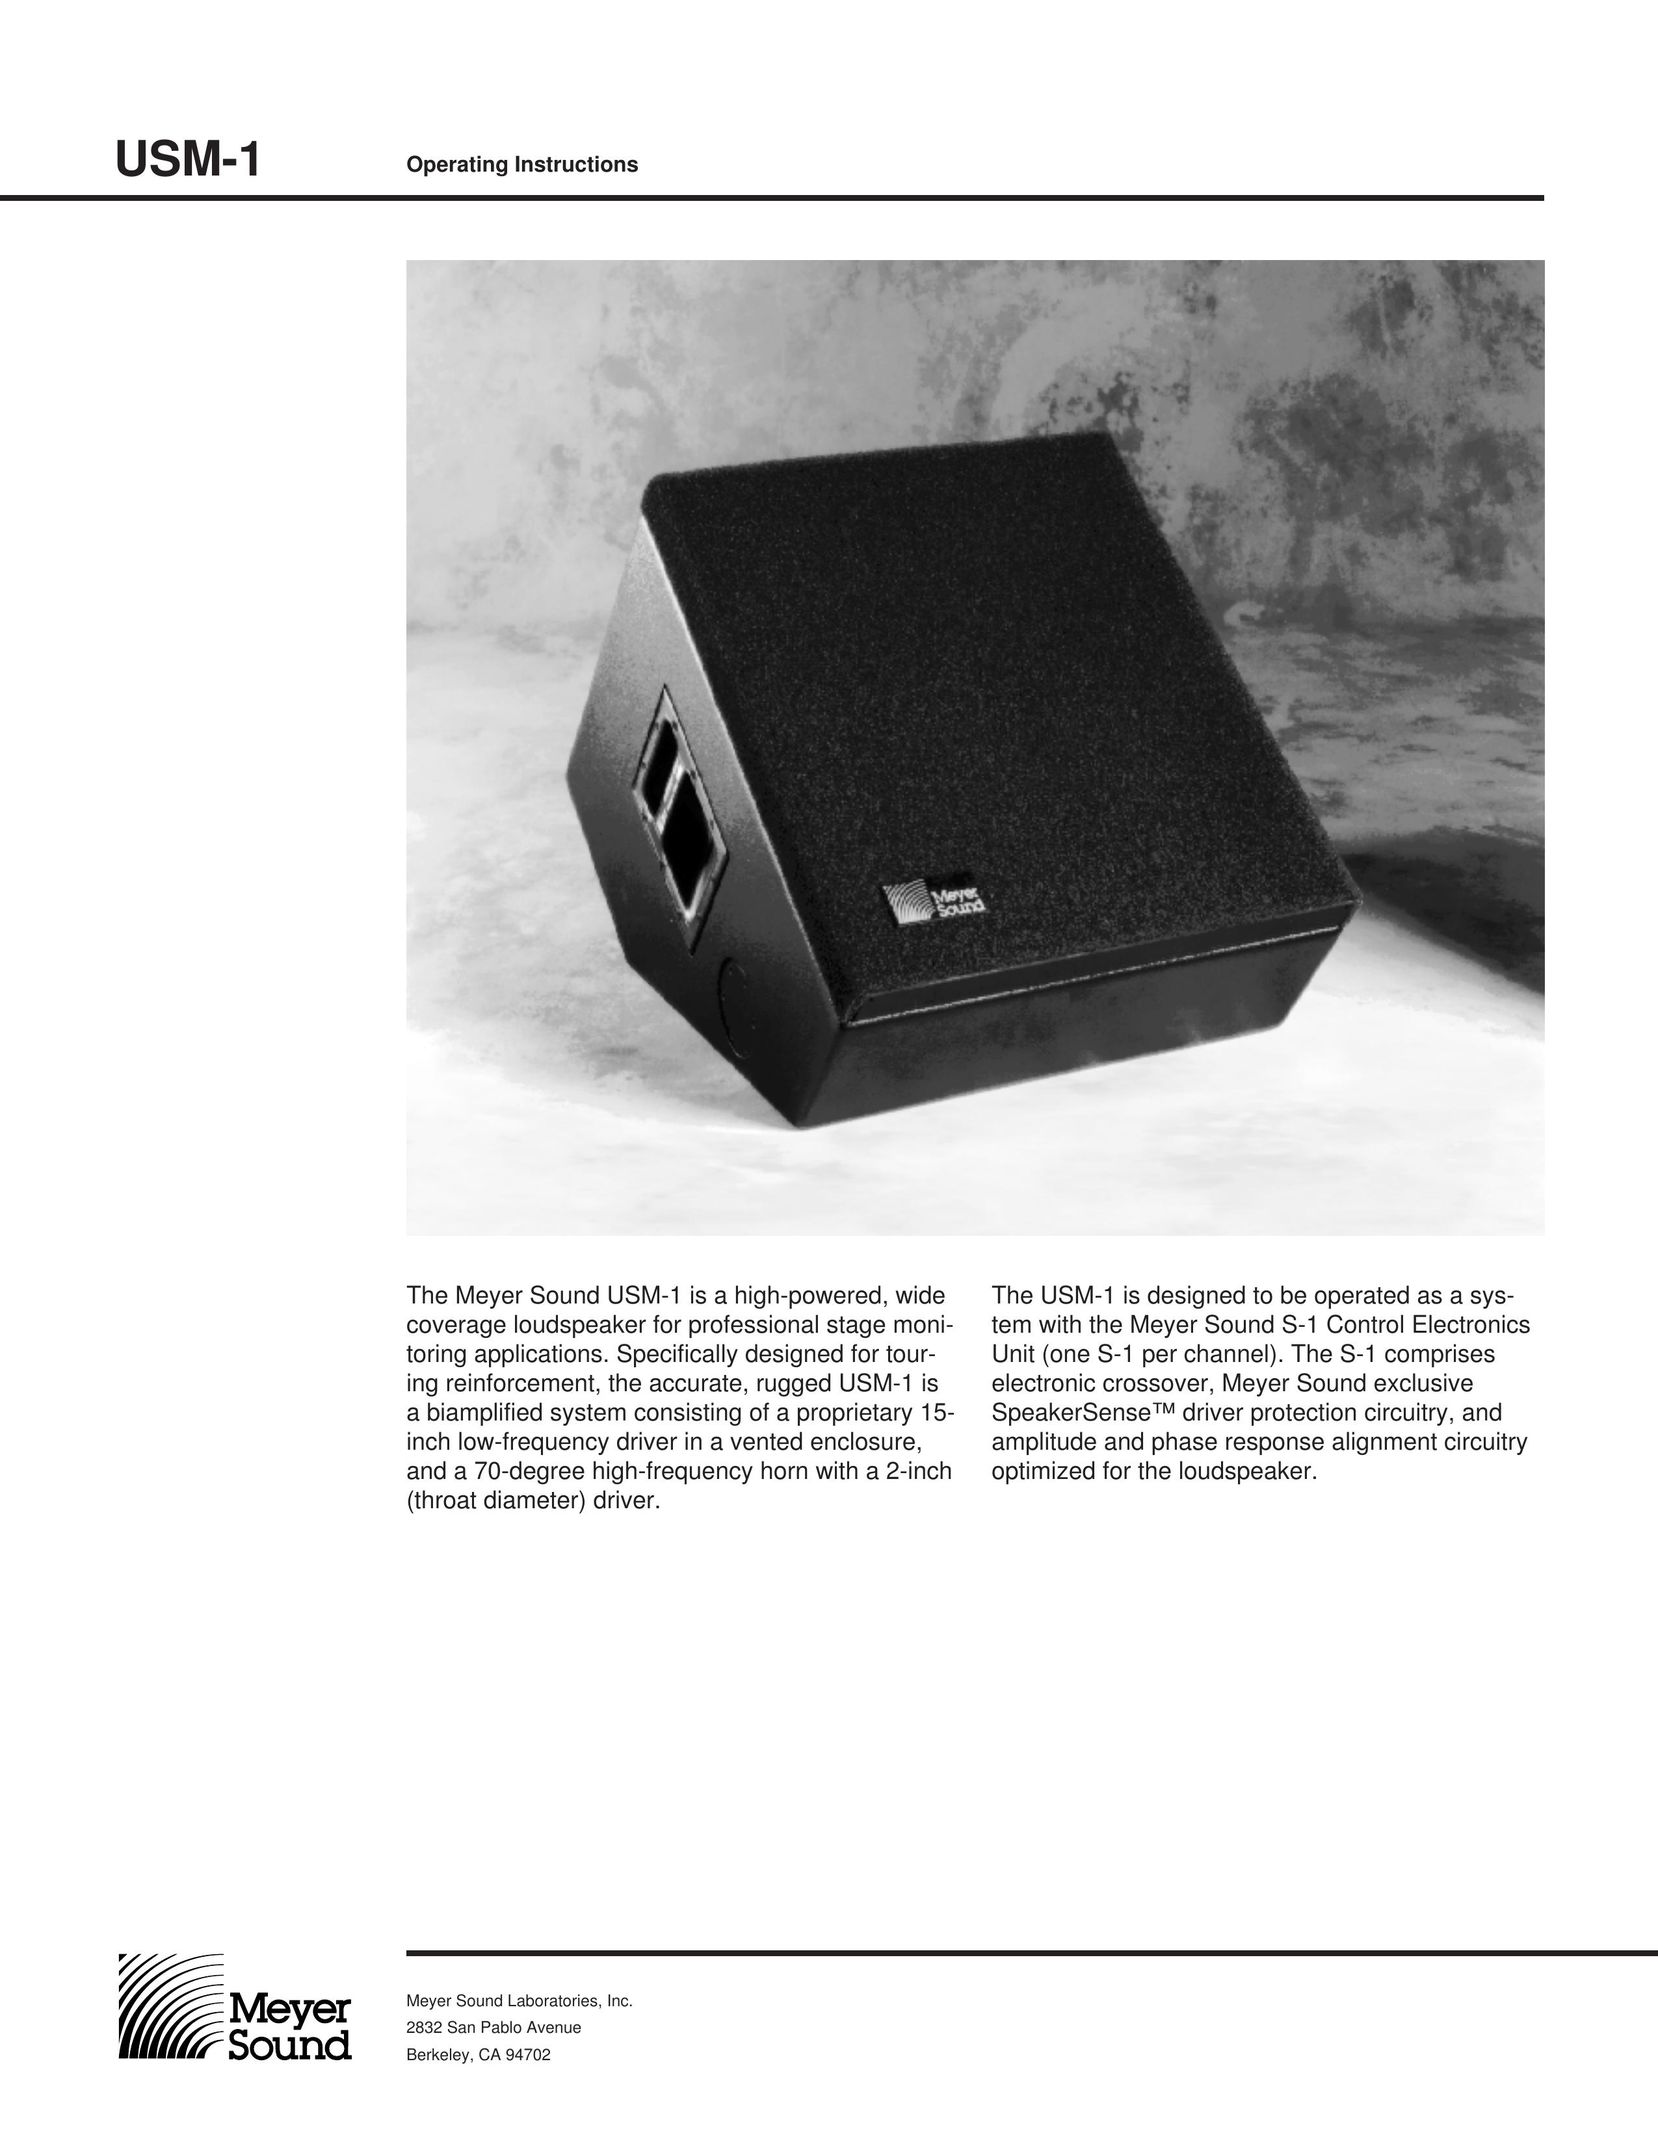 Meyer Sound USM-1 Speaker System User Manual